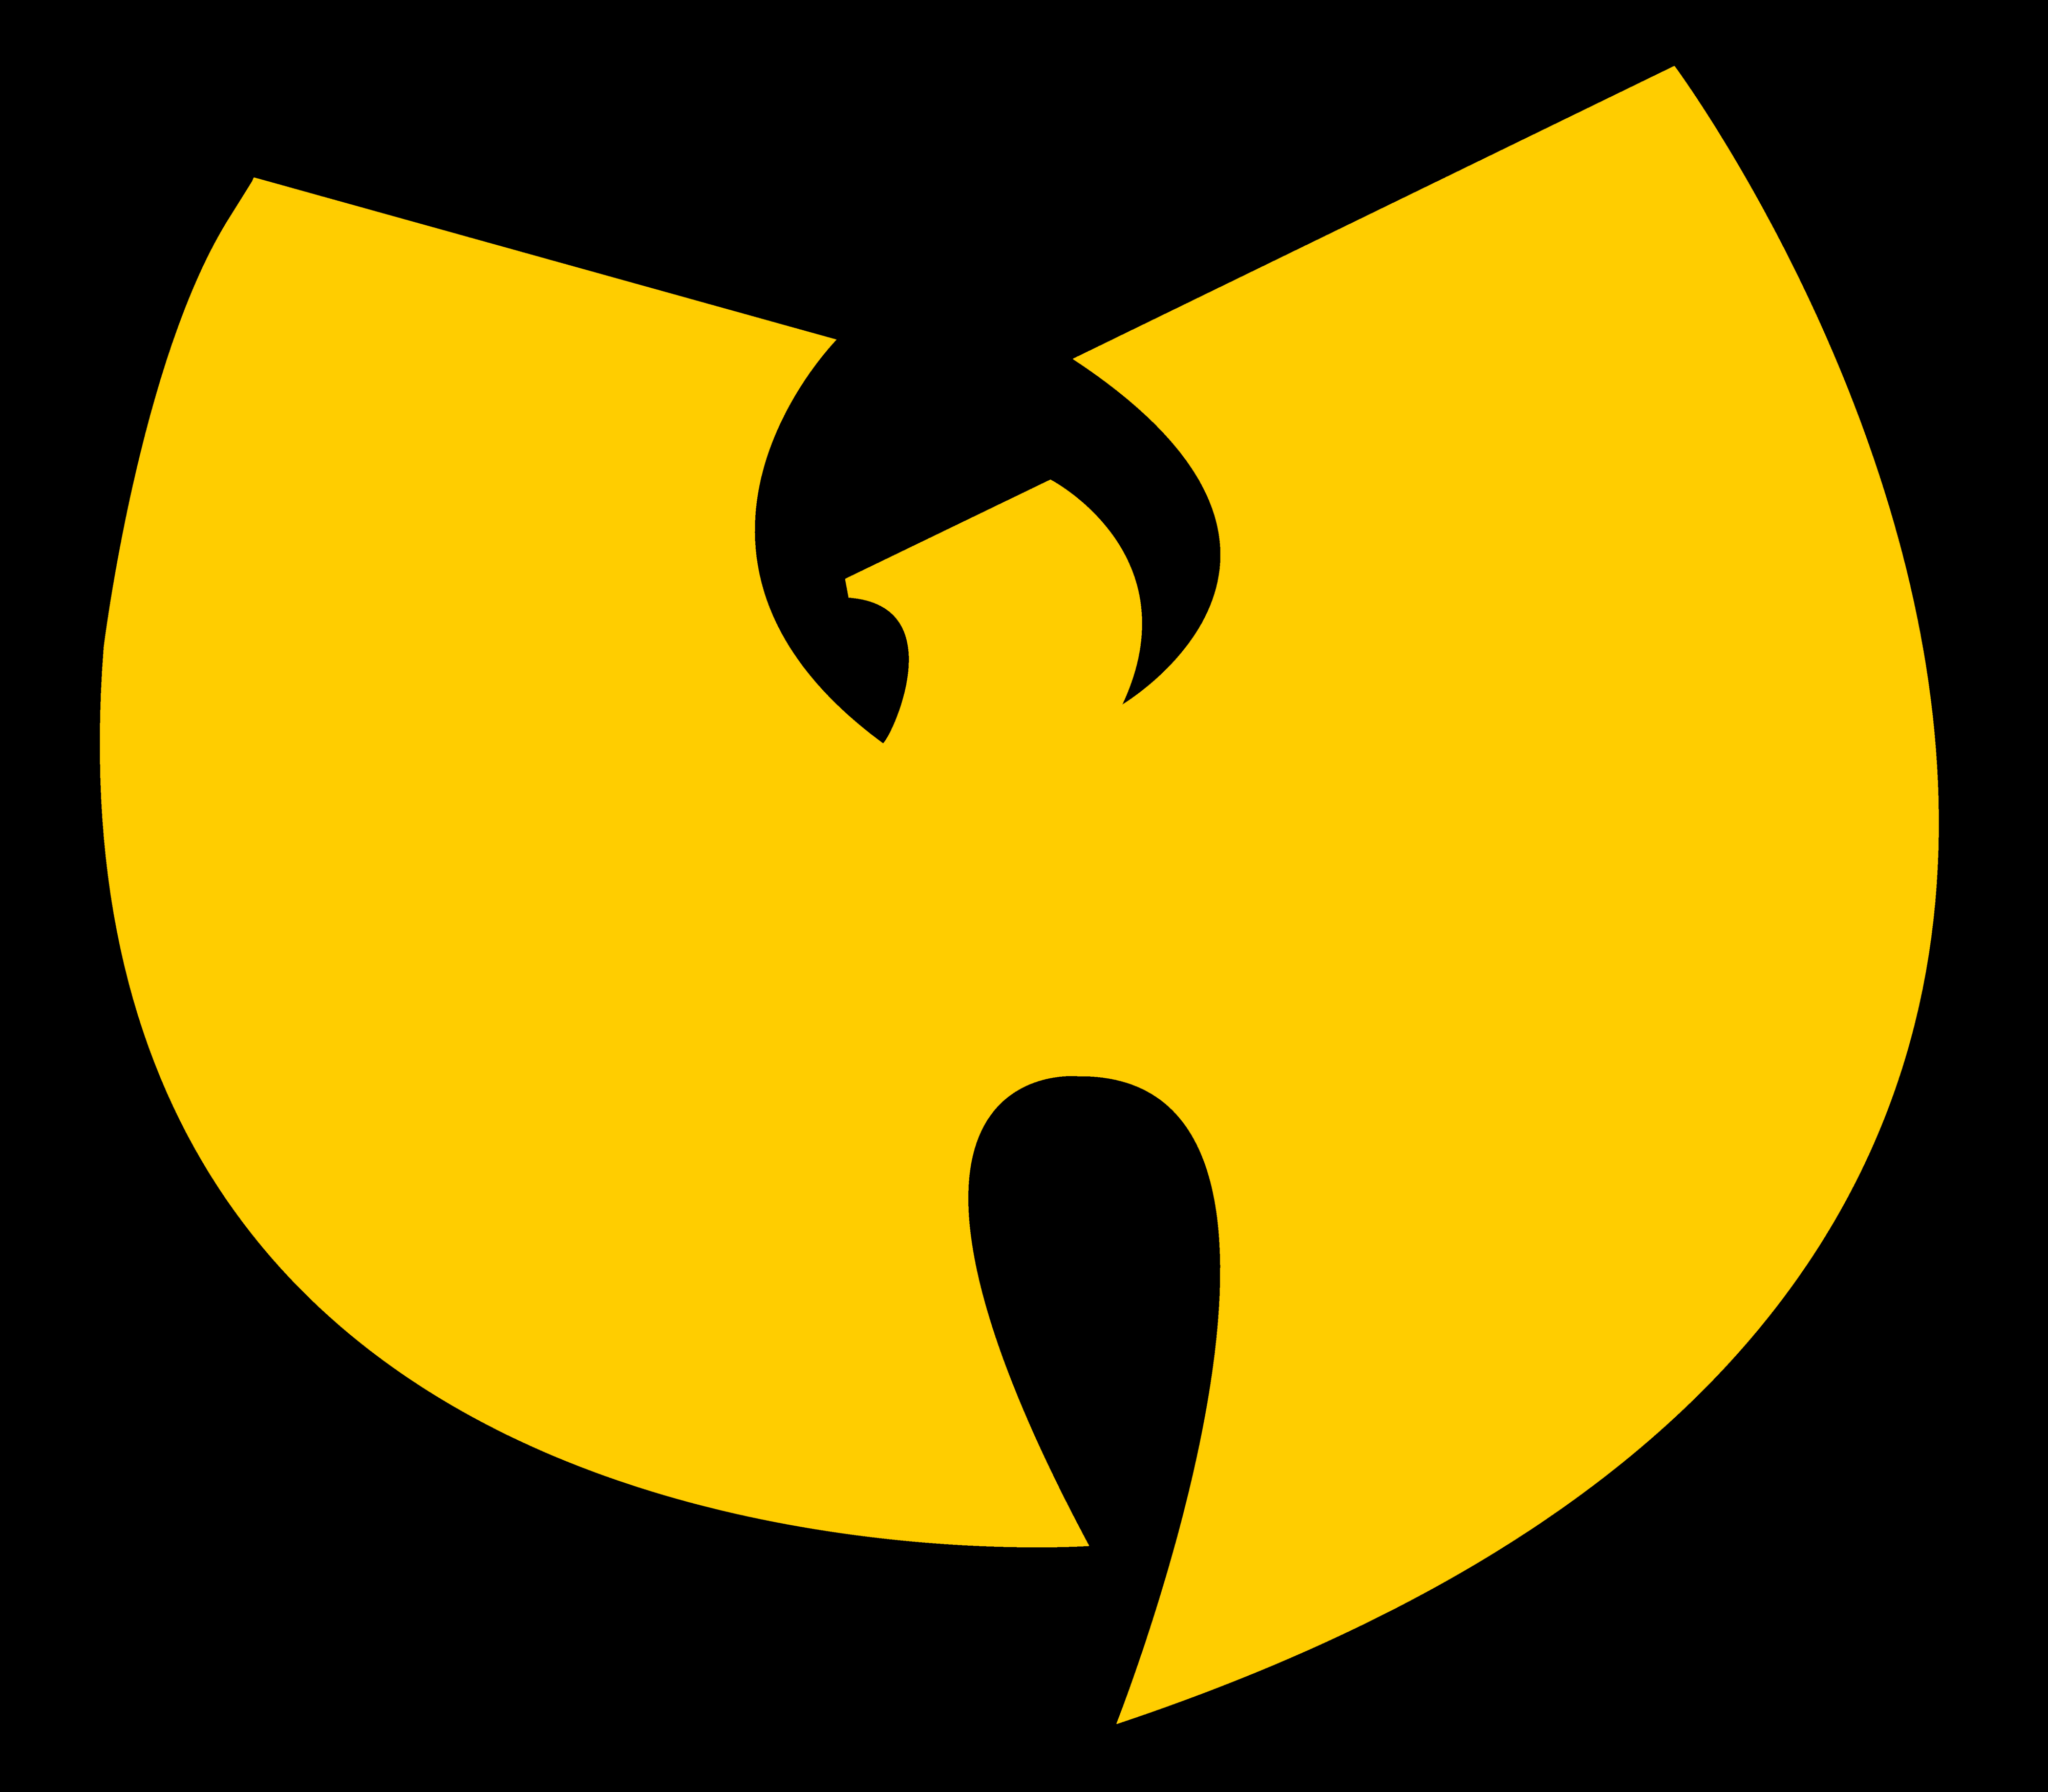 Wu-Tang_Clan_logo_yellow-black.png